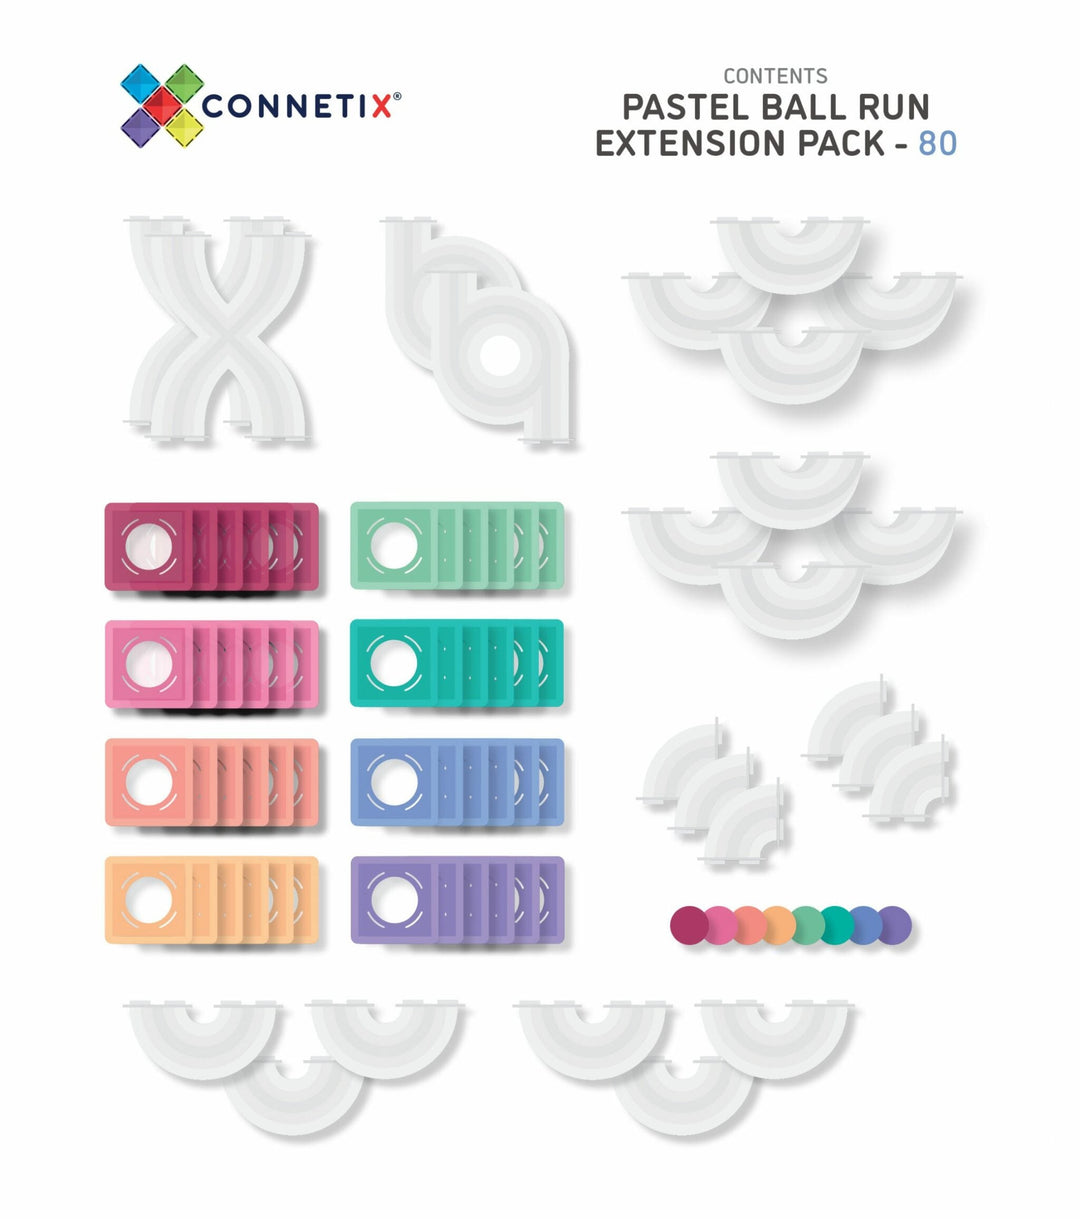 Connetix Clear Shape Expansion Pack 24 pc